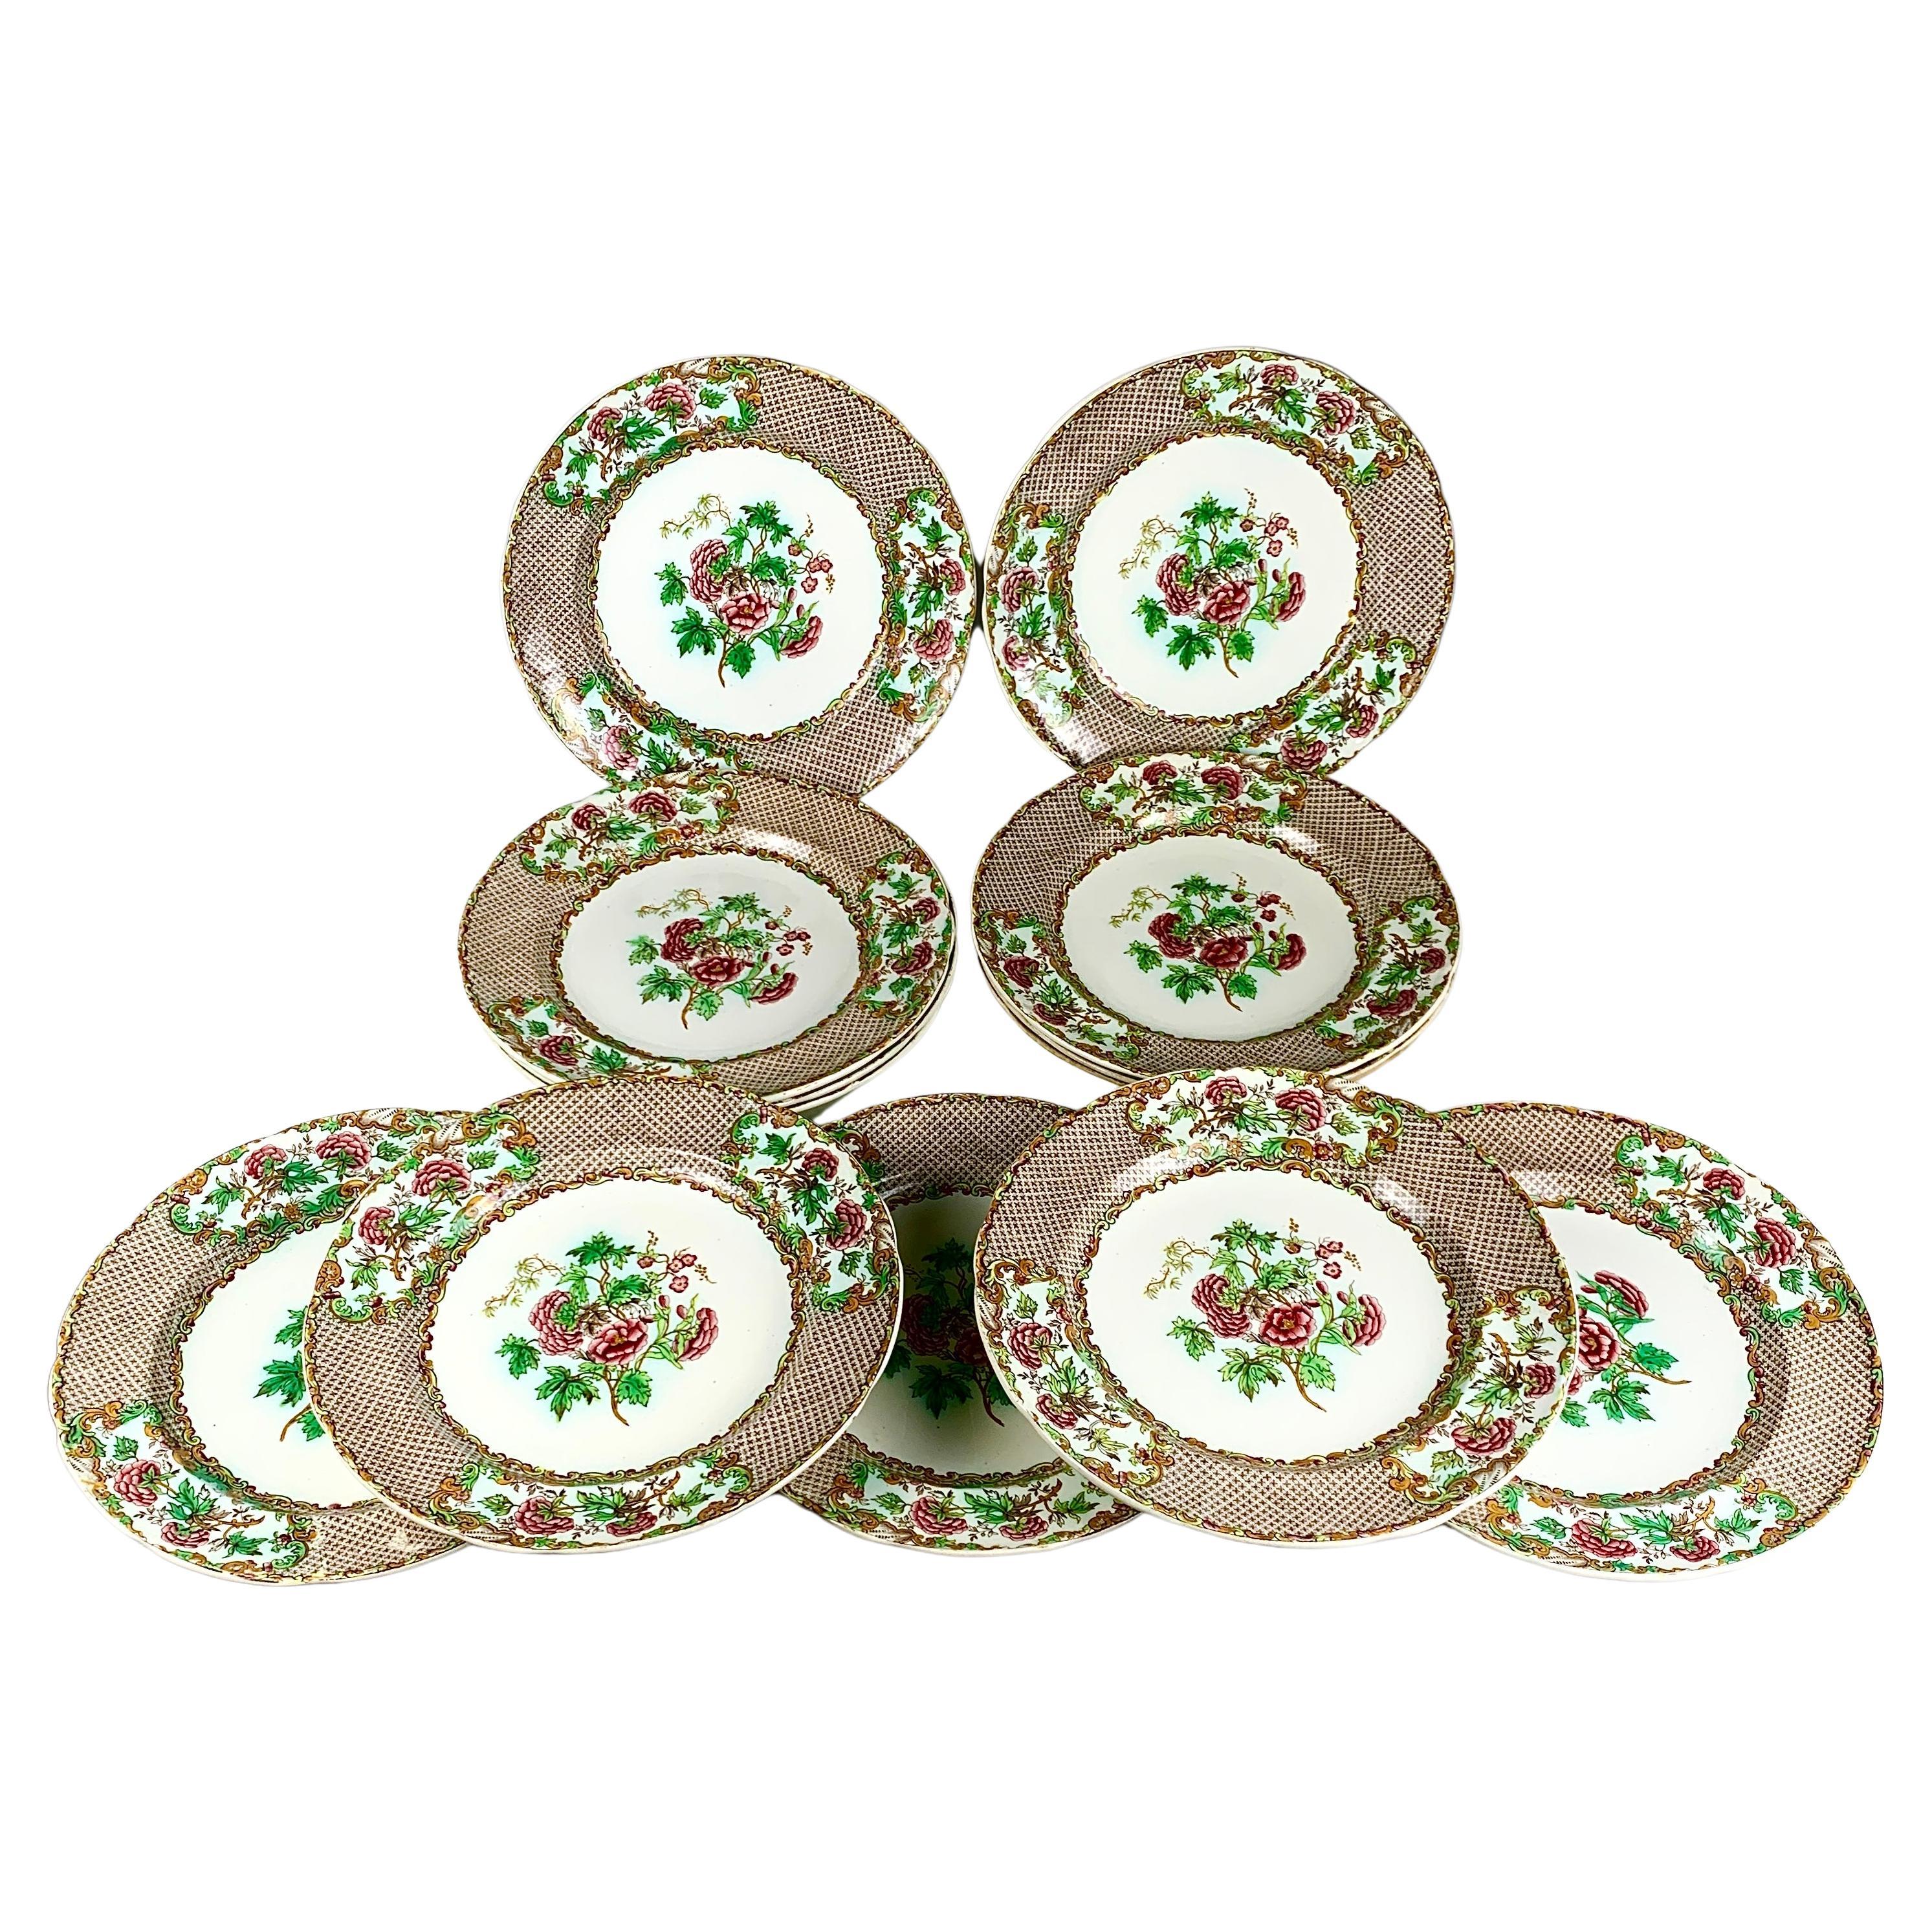 Douzaine d'assiettes plates Spode anciennes avec bordure de roses et de feuilles vertes C-1837 en vente